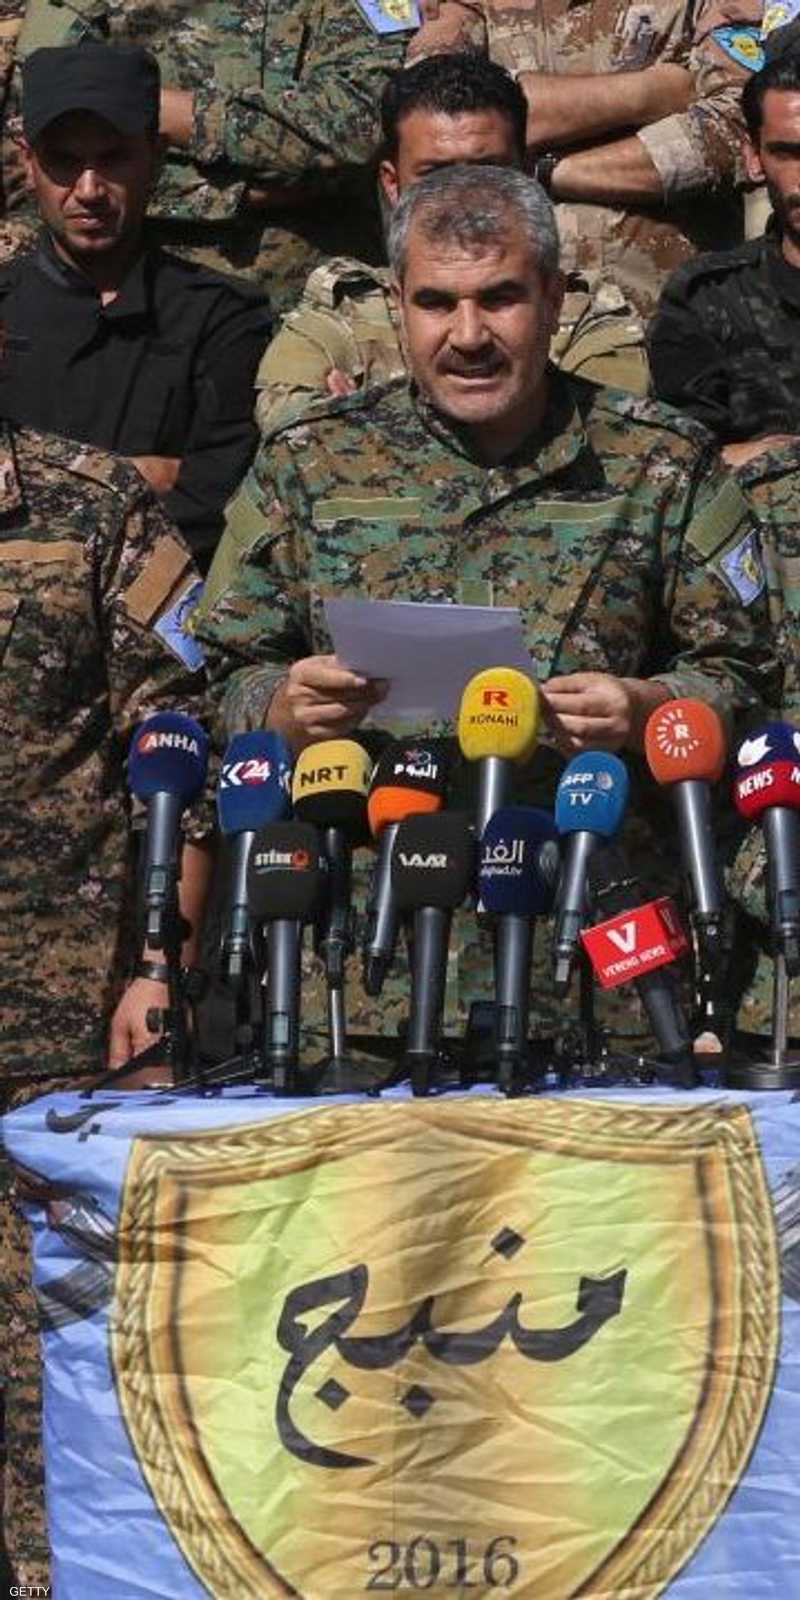 بعد دعوة الأكراد.. الجيش السوري يعلن دخول منبج 1-1164359.jpg